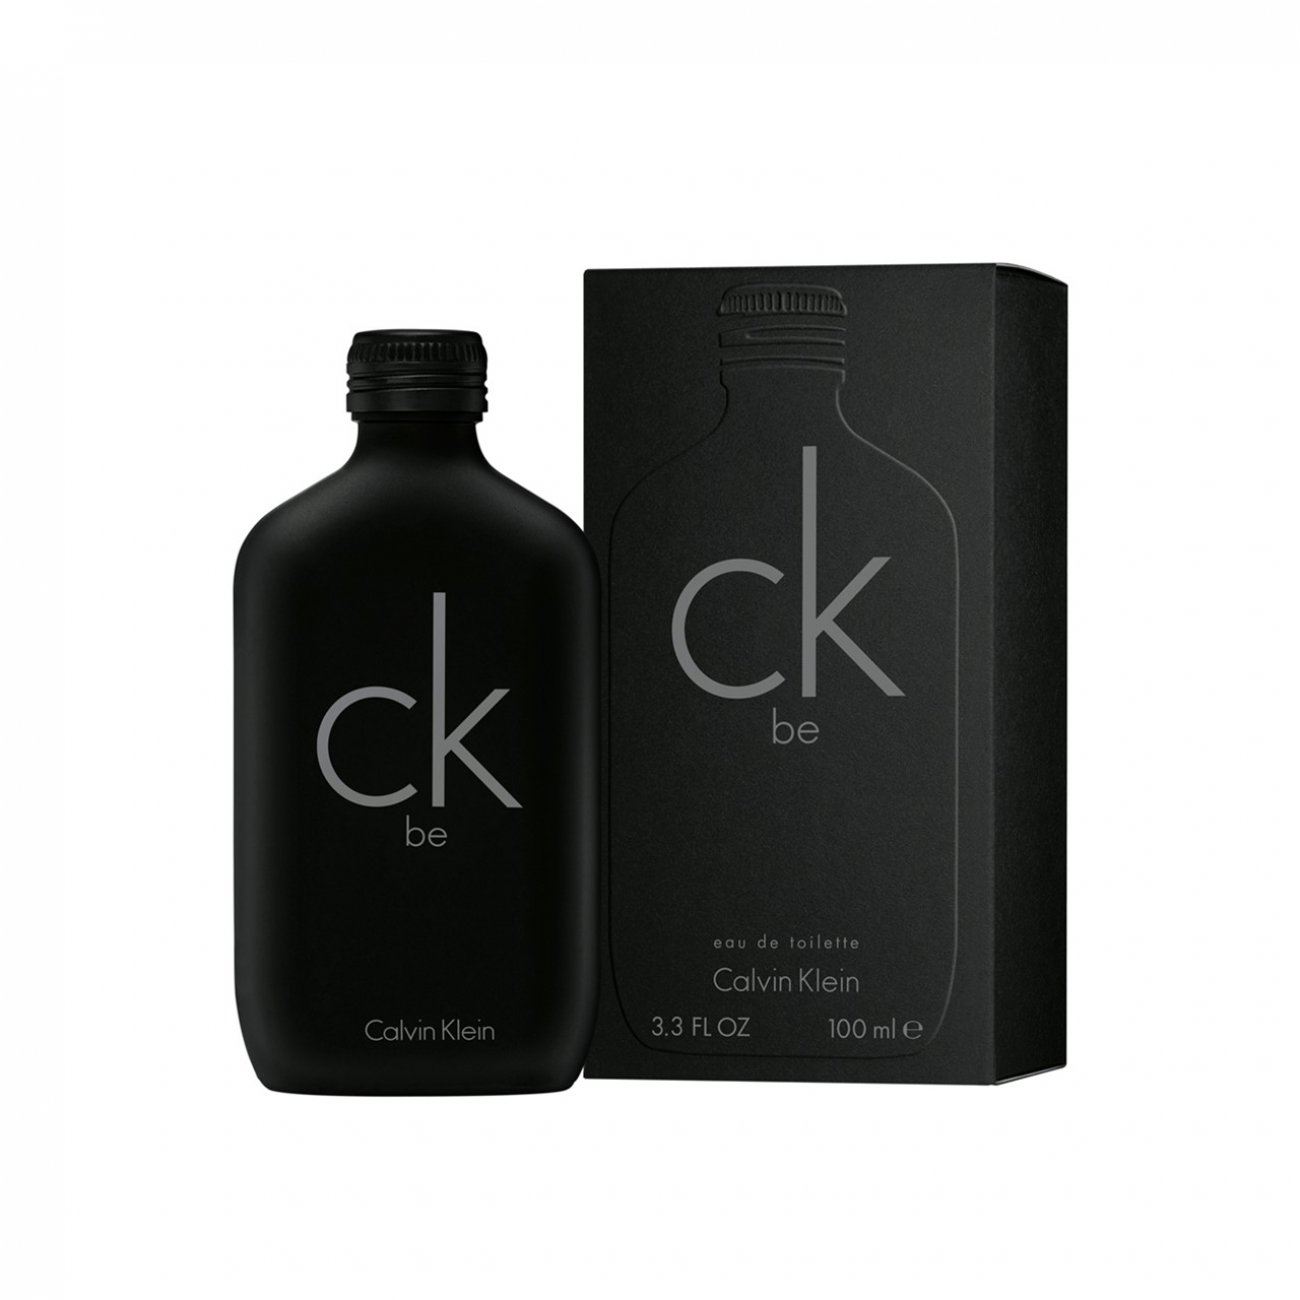 Buy Calvin Klein CK Be Eau de Toilette 100ml · Germany